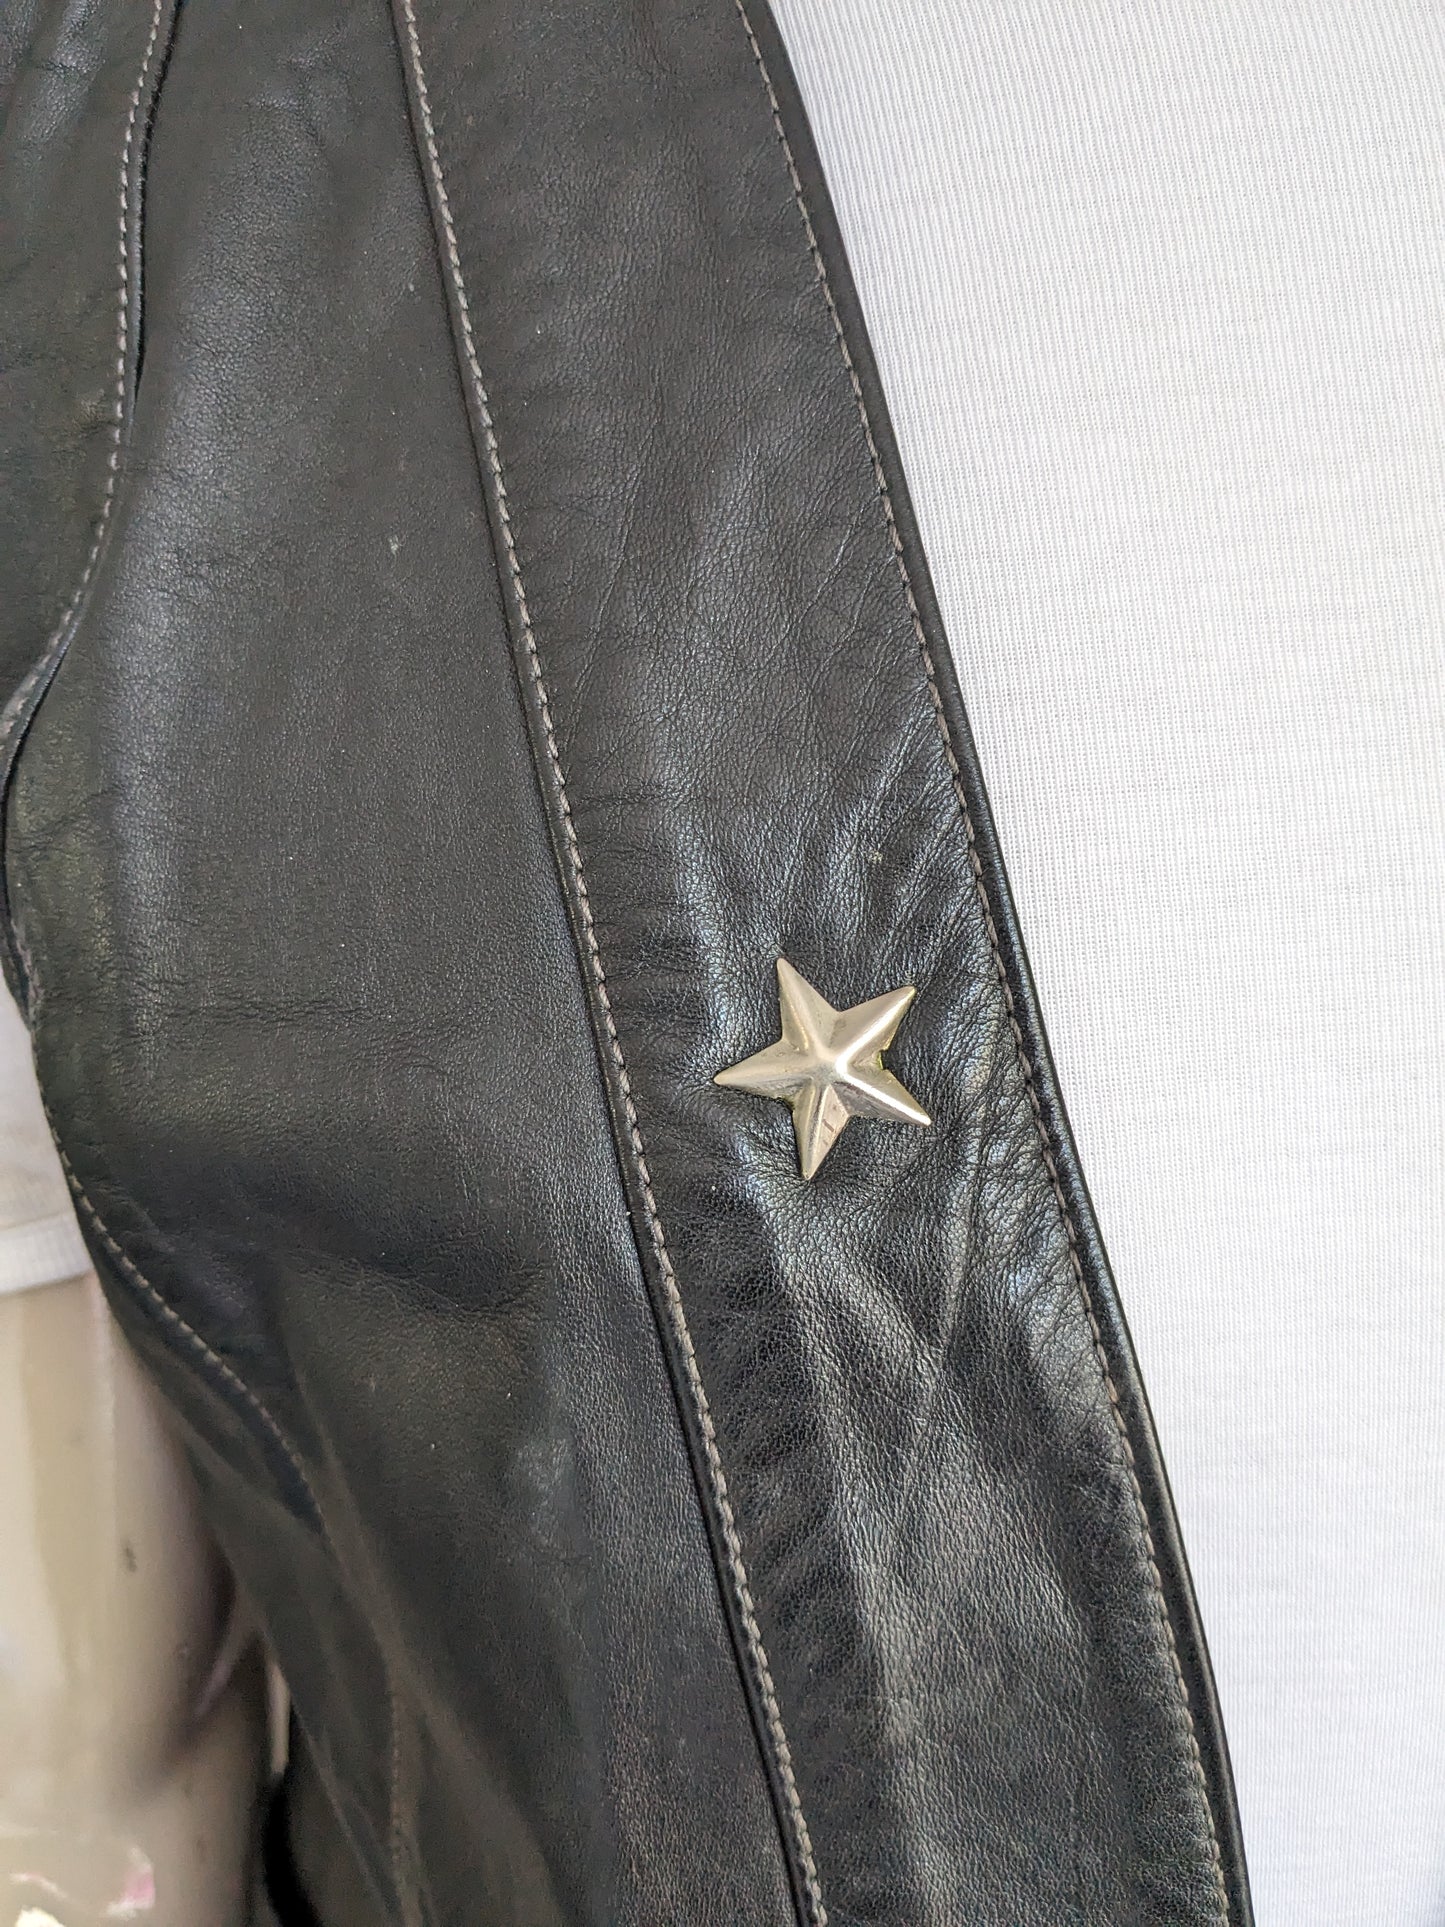 Gilet en cuir sans fermeture. Black coloré avec une étoile de couleur argentée. Taille M / L.